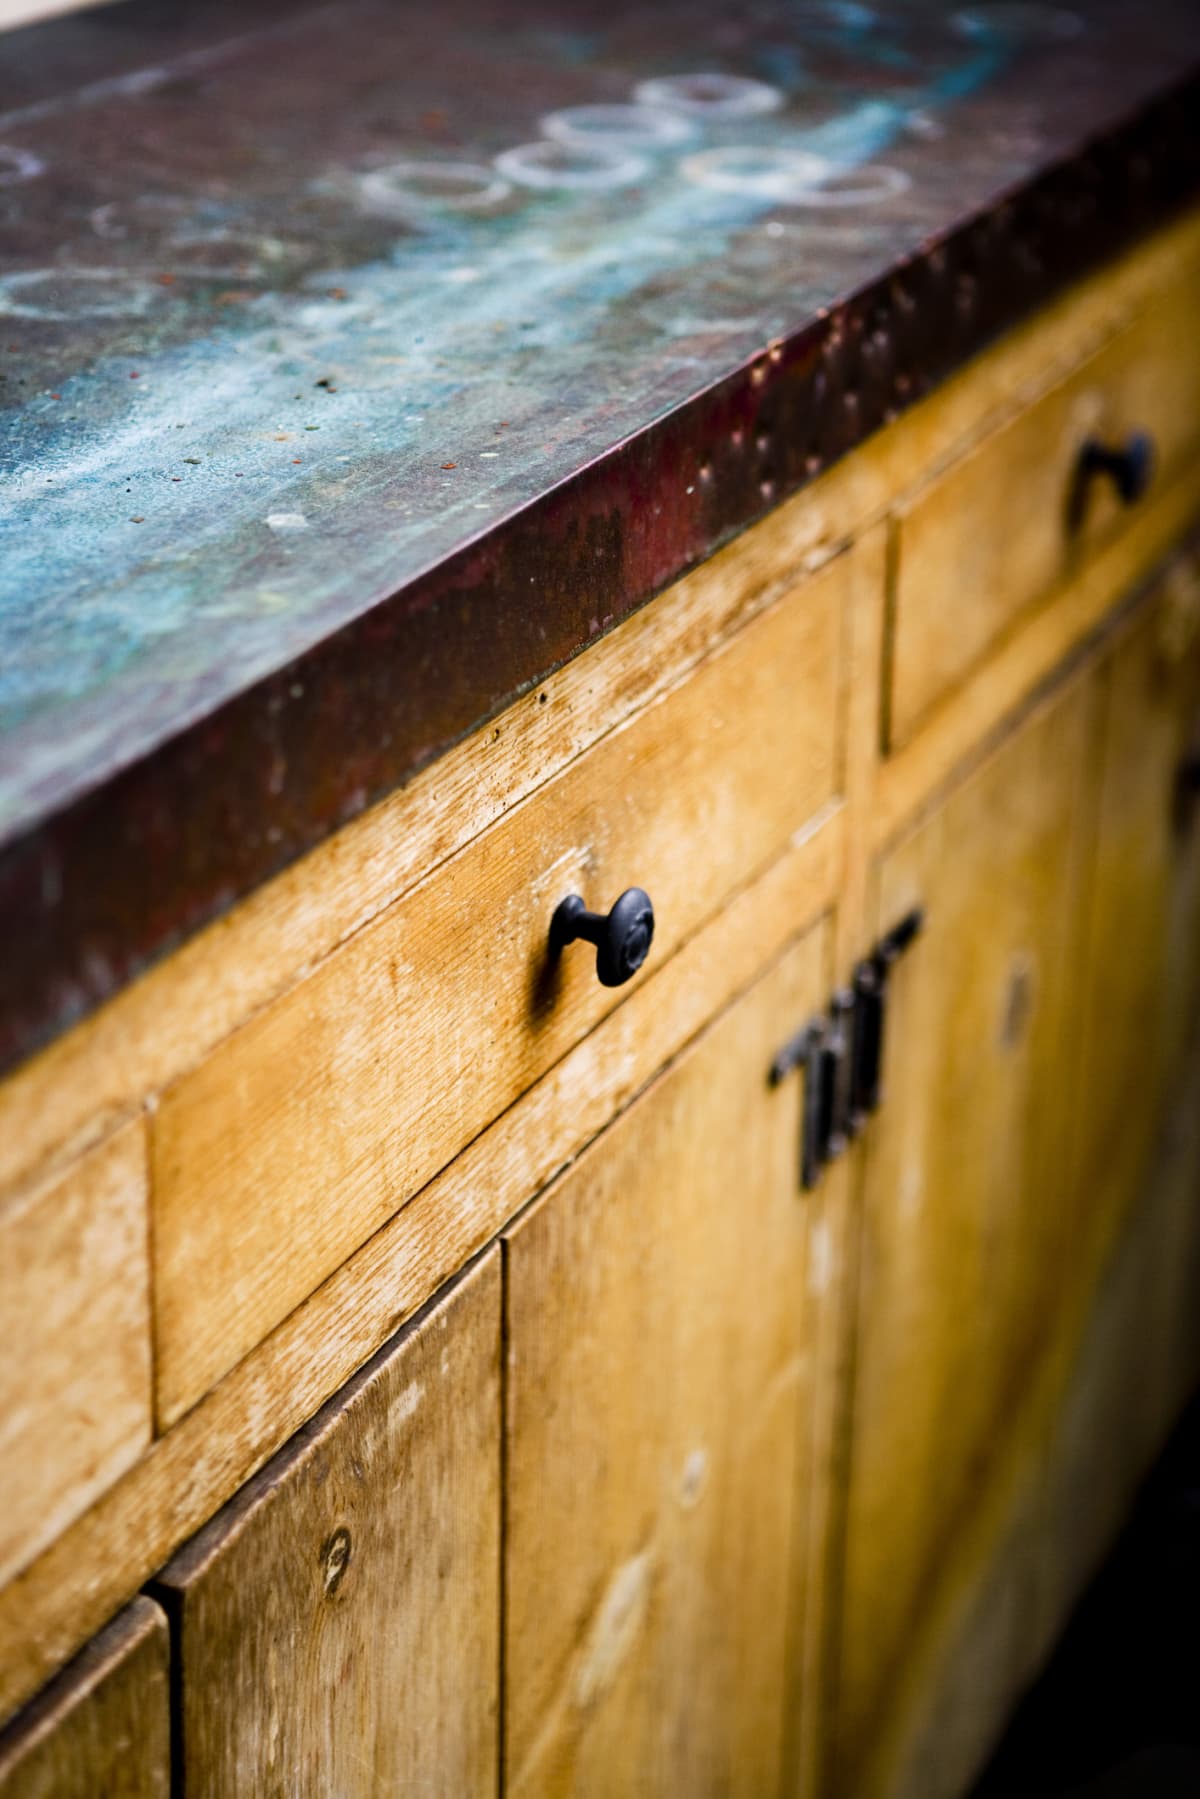 Vintage wooden kitchen cabinets with a worn, dark countertop